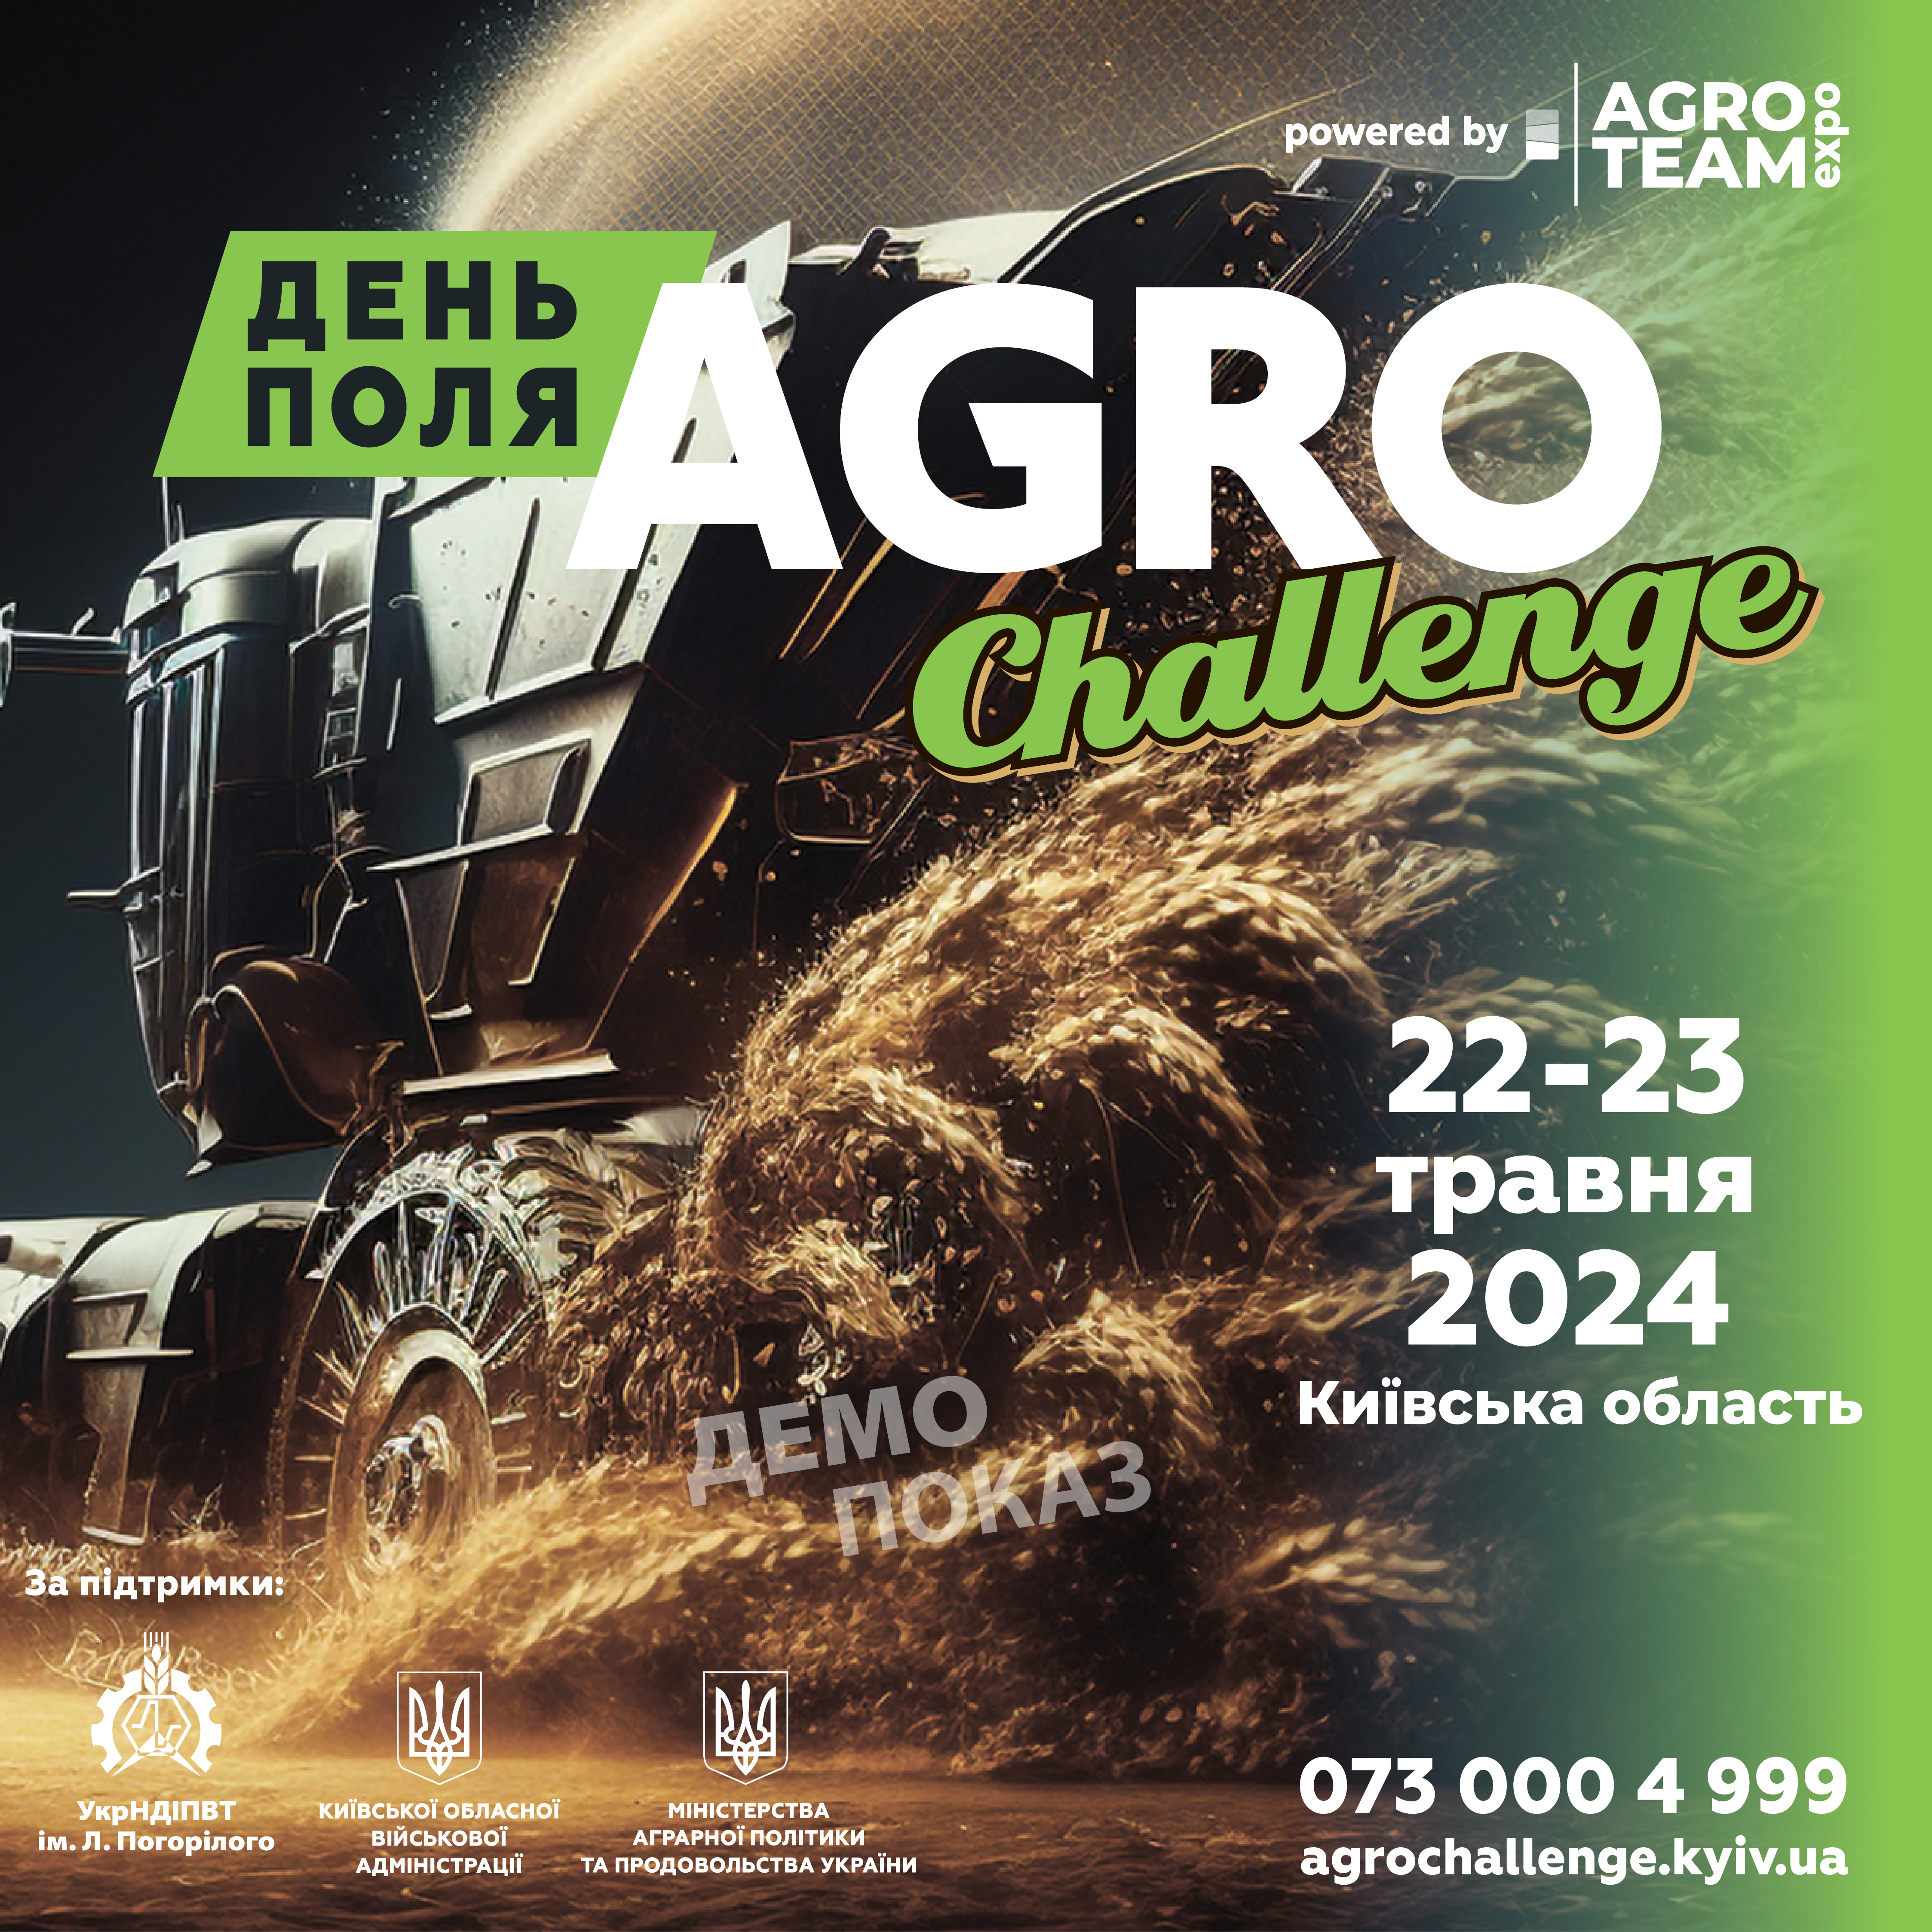 Dzień Polowy AGRO CHALLENGE, 22-23 maja 2024 r